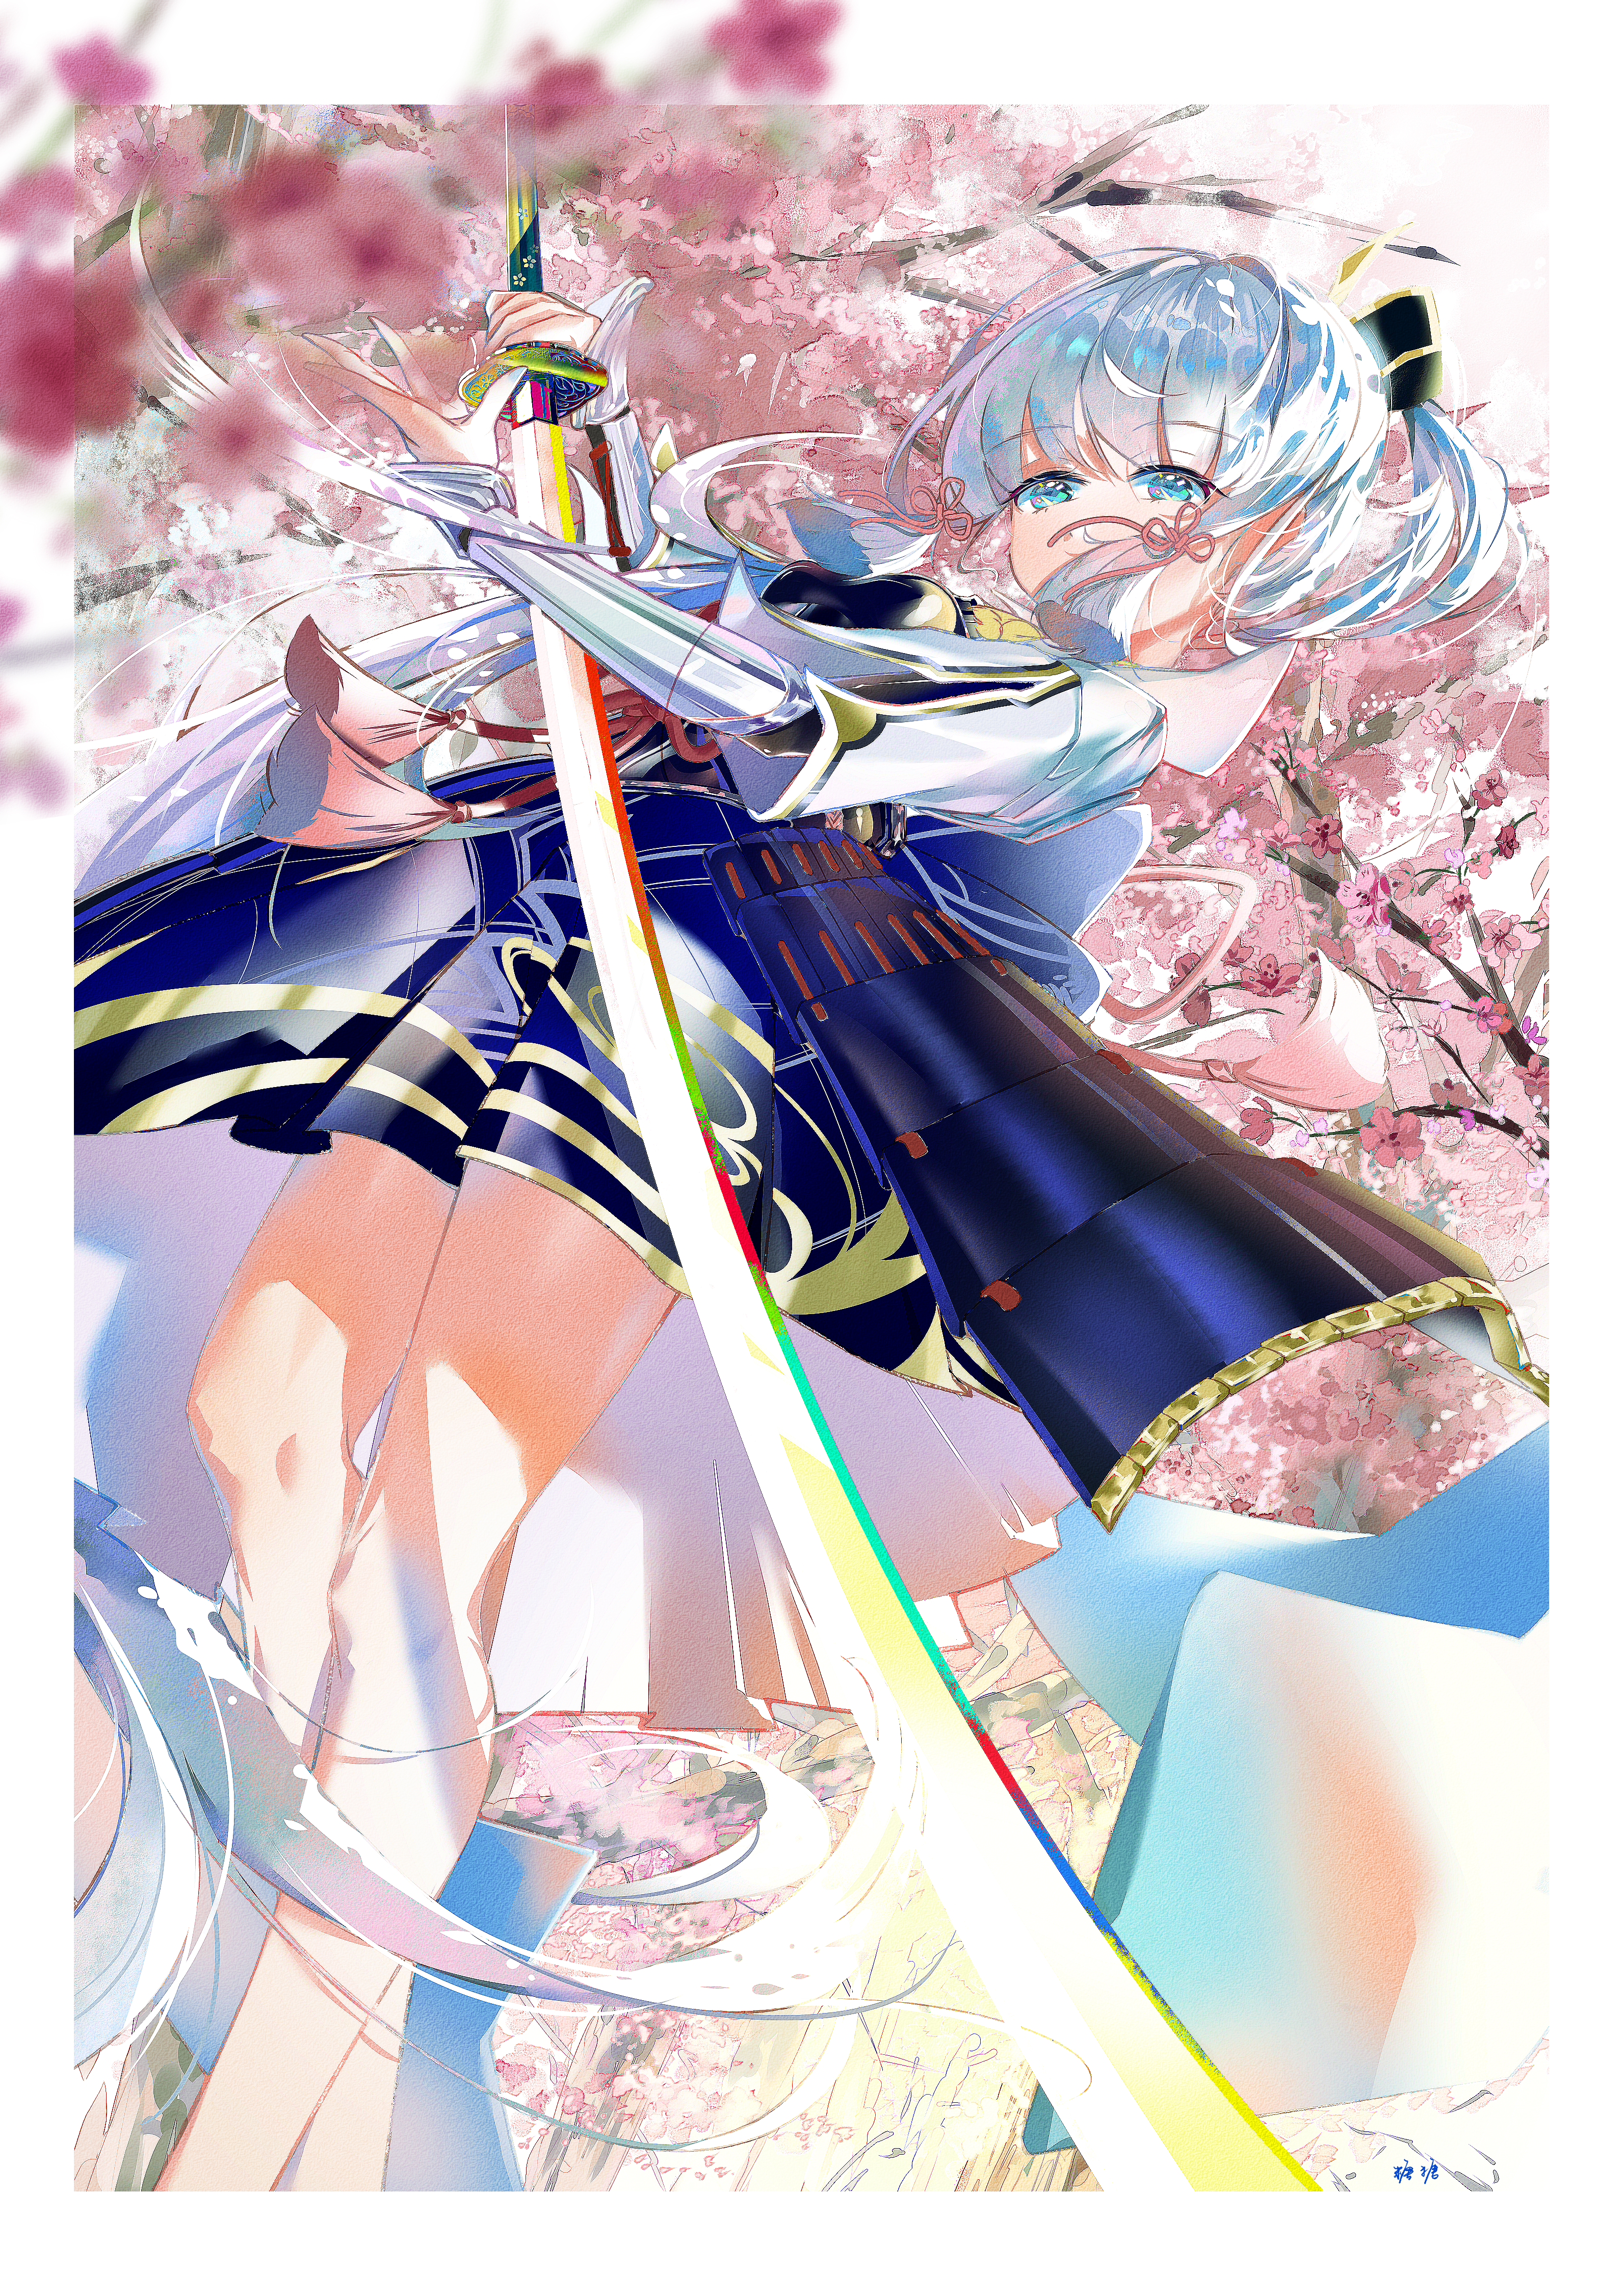 Anime 3184x4503 anime anime girls Kamisato Ayaka (Genshin Impact) Genshin Impact sword portrait display long hair blue hair blue eyes looking at viewer weapon